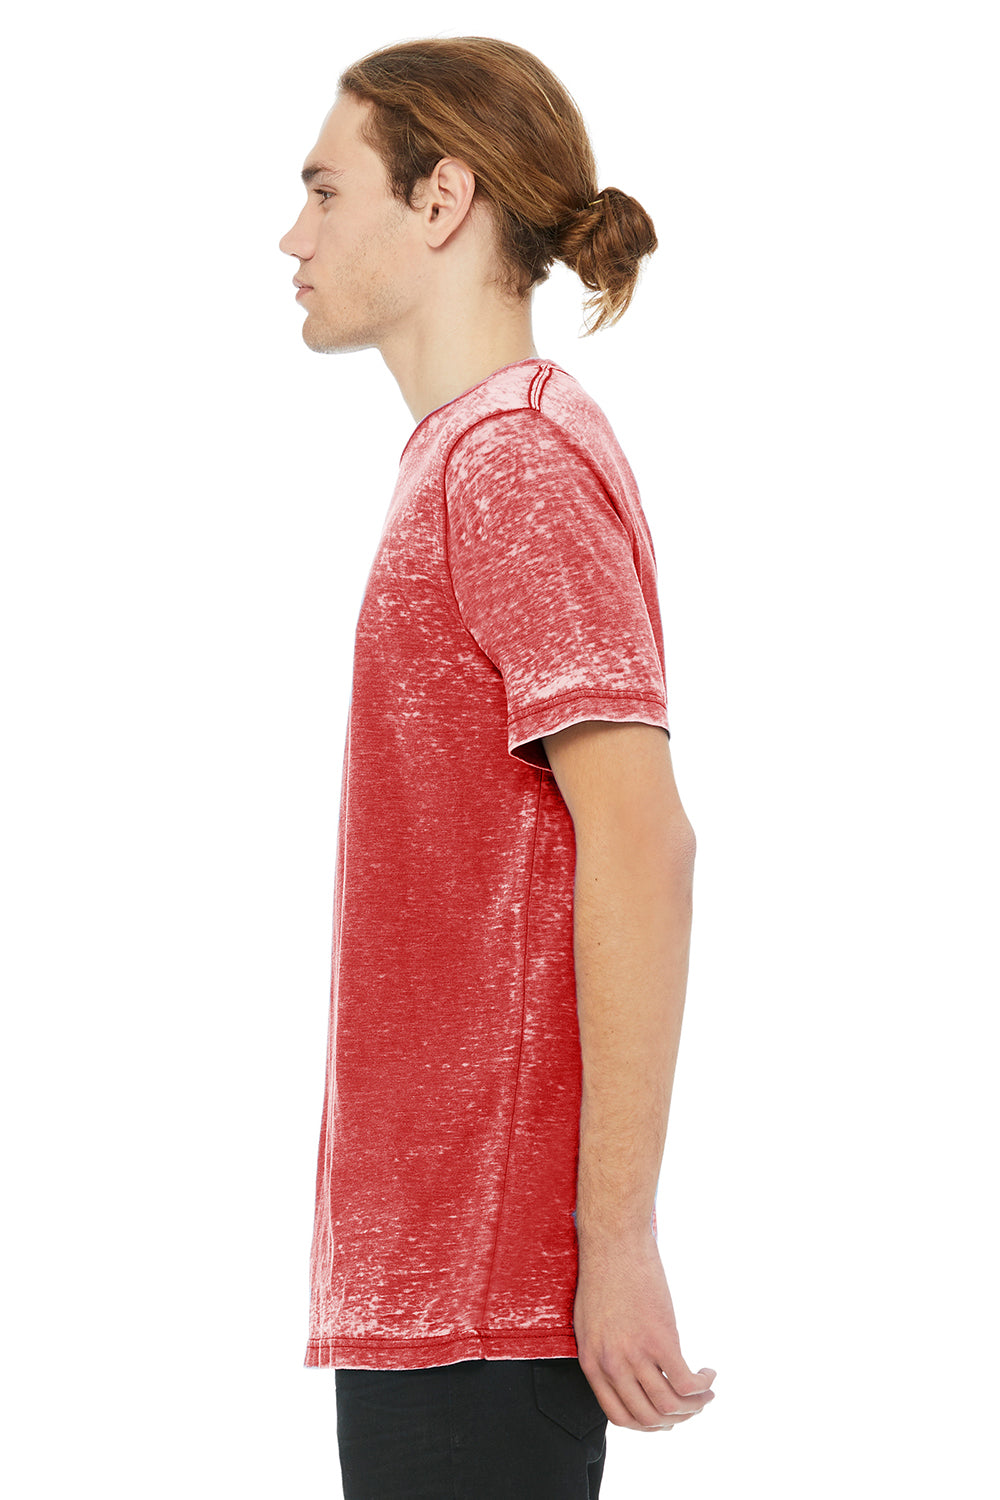 Bella + Canvas 3650 Mens Short Sleeve Crewneck T-Shirt Red Acid Washed Side